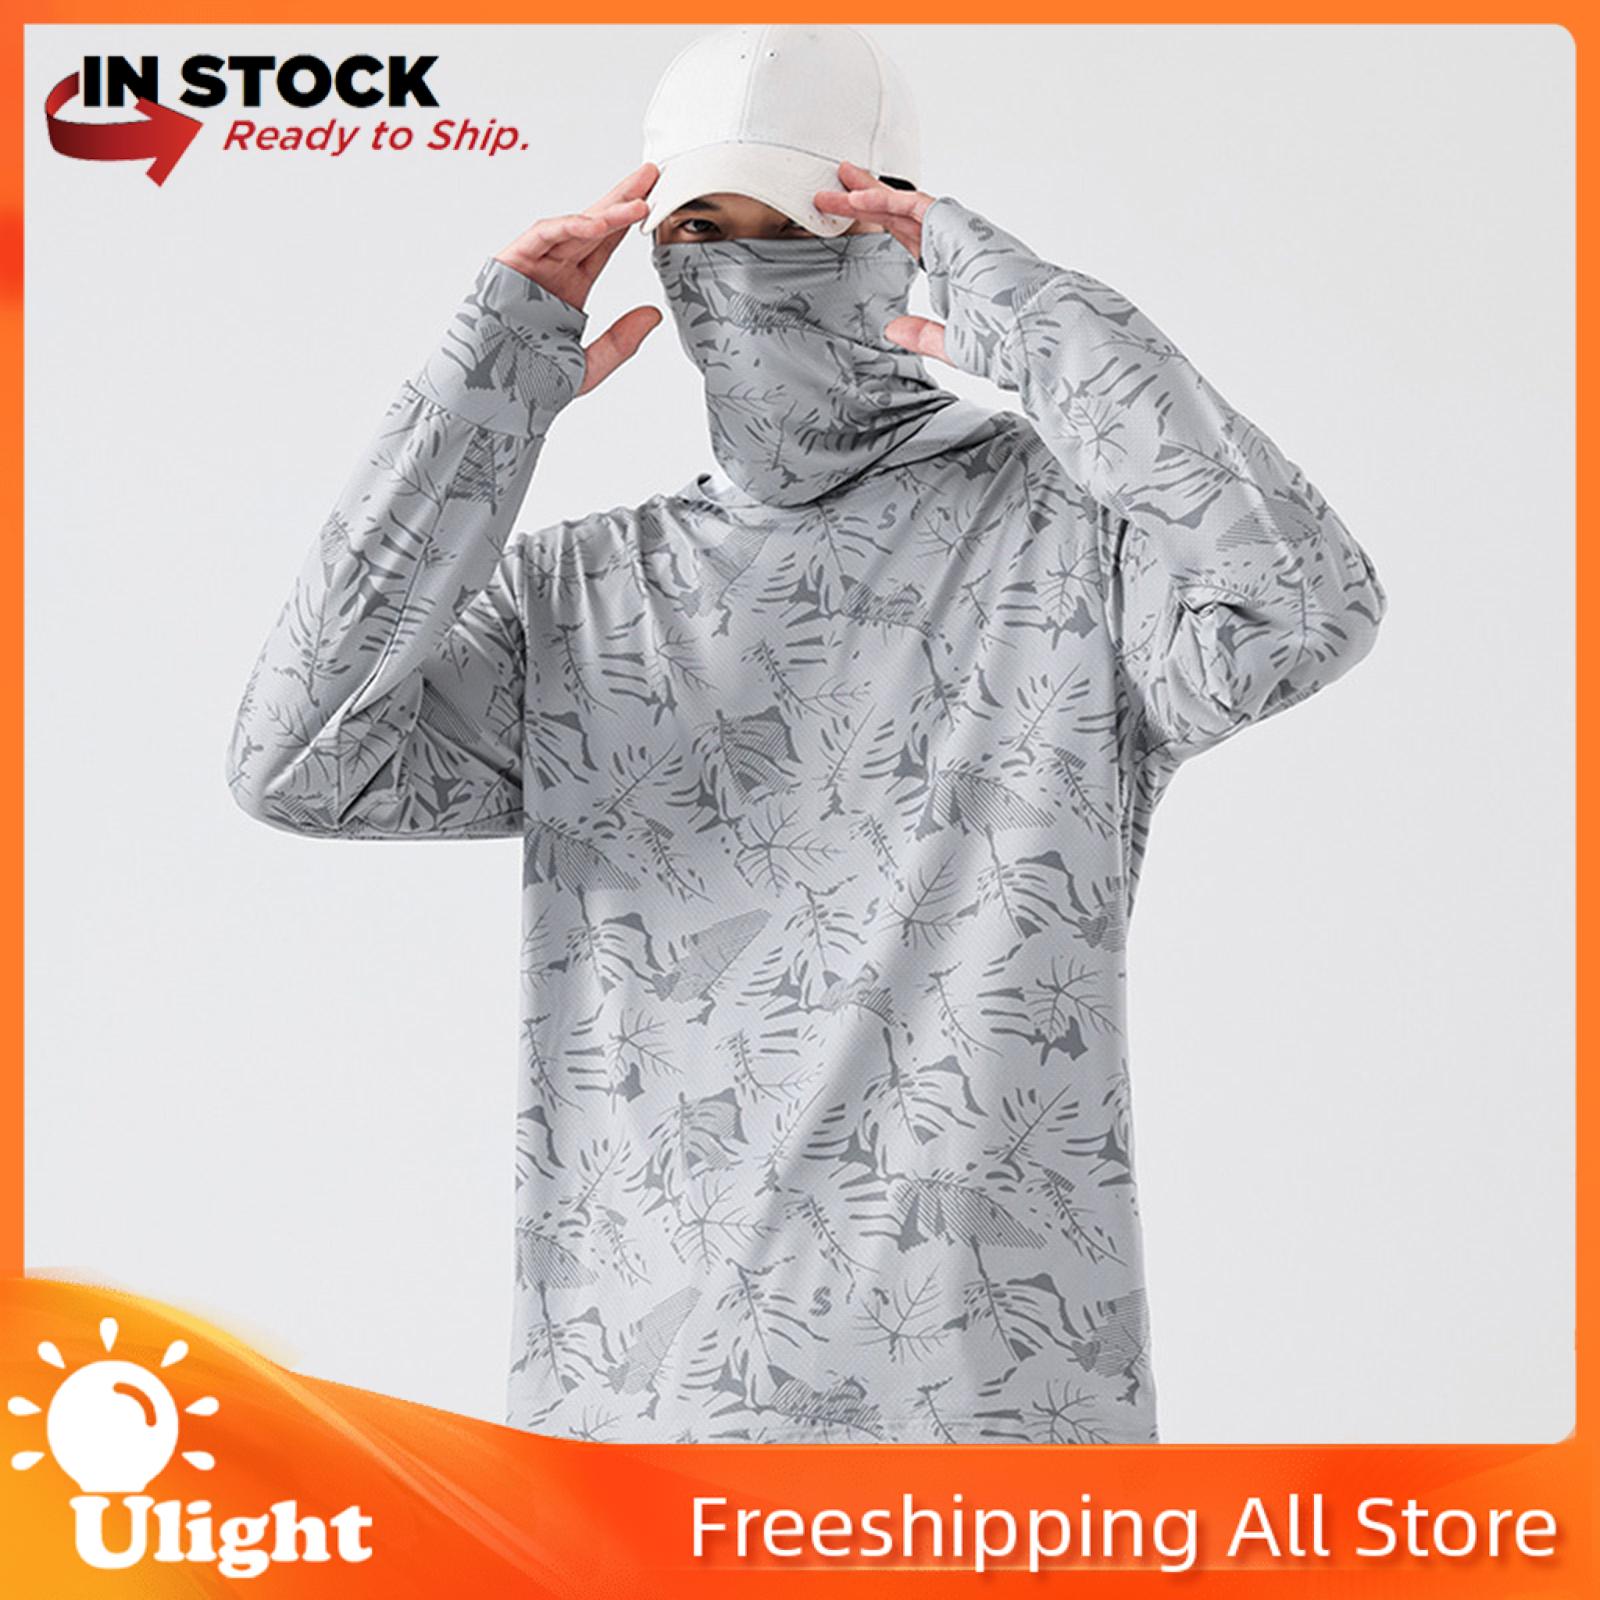 Ulight Men's Sun Protection Hoodie Shirt Sun Shirts Lightweight